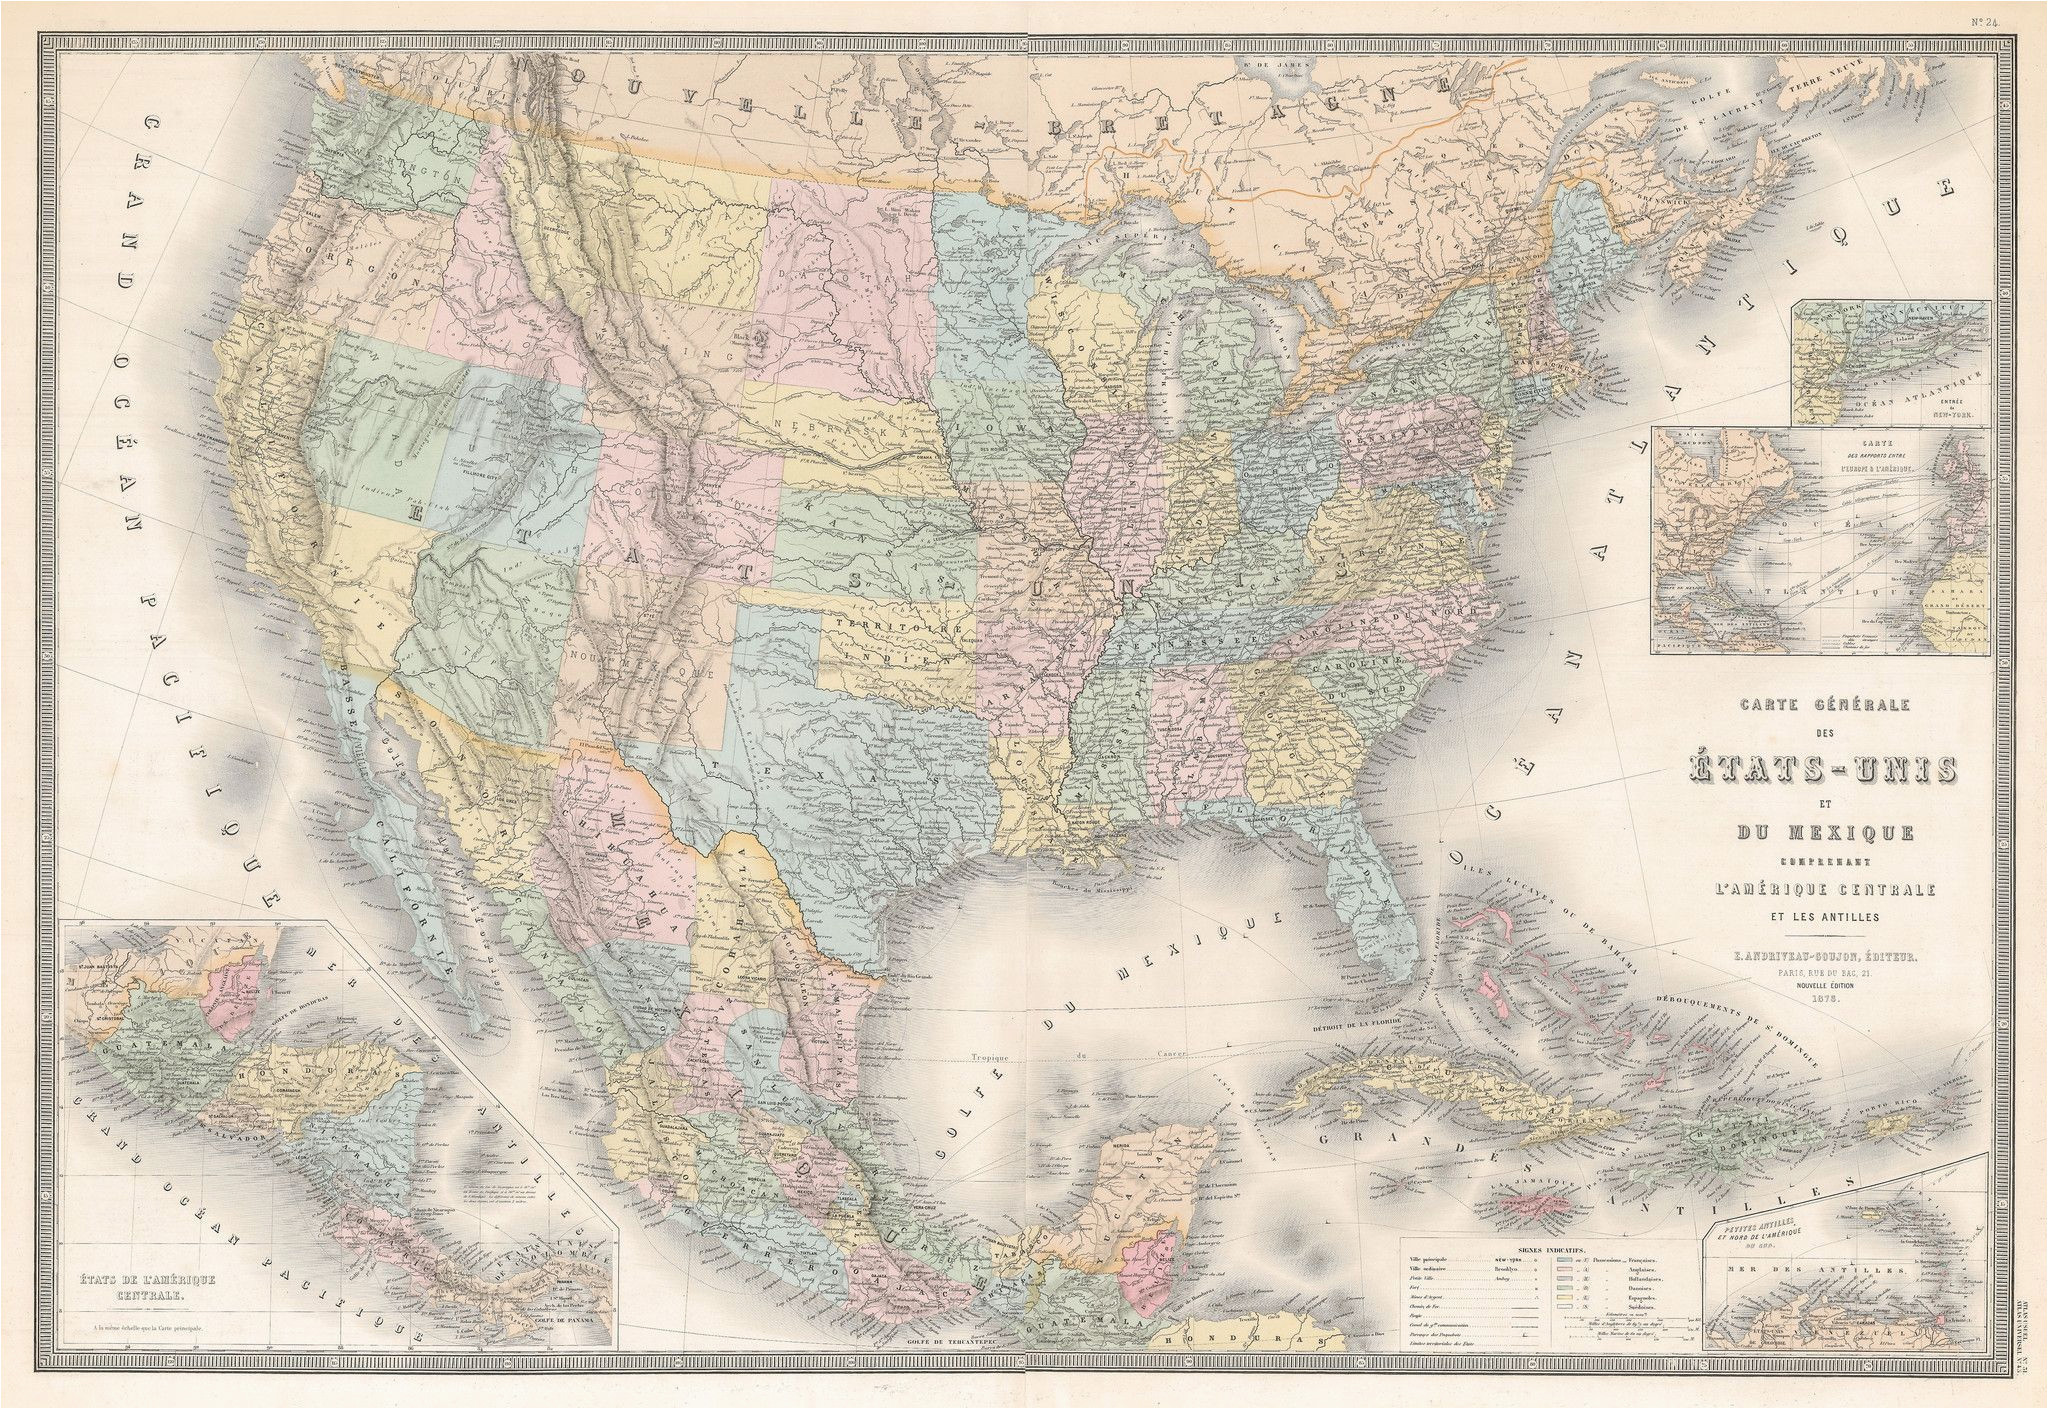 1875 carte generale des etats unis et du mexique comprenant l